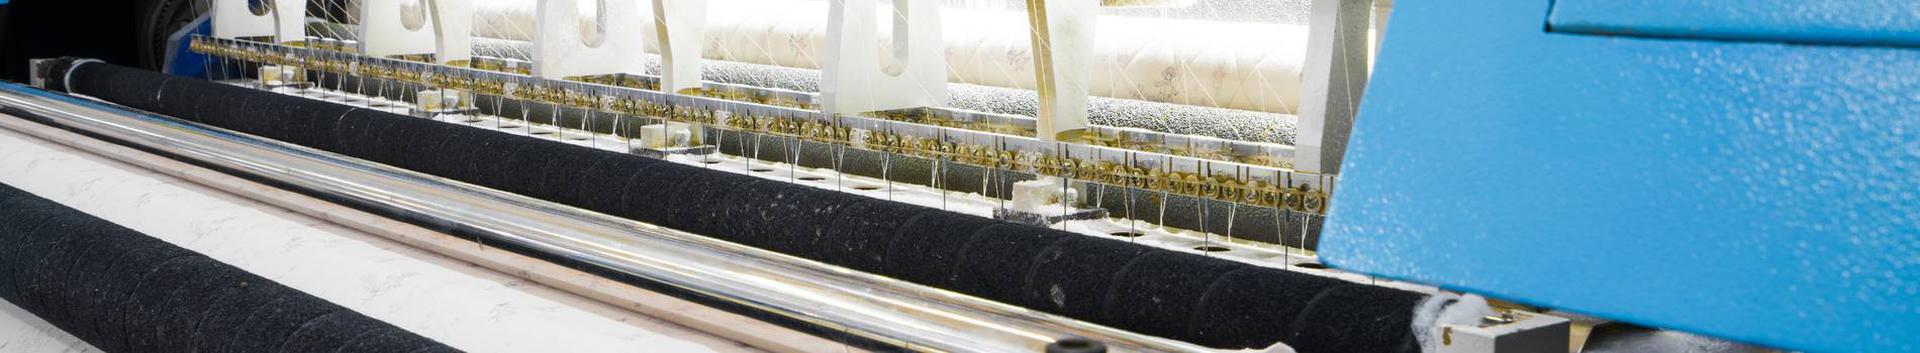 tekstiilitööstus jms teenused, tooted, konsultatsioonid